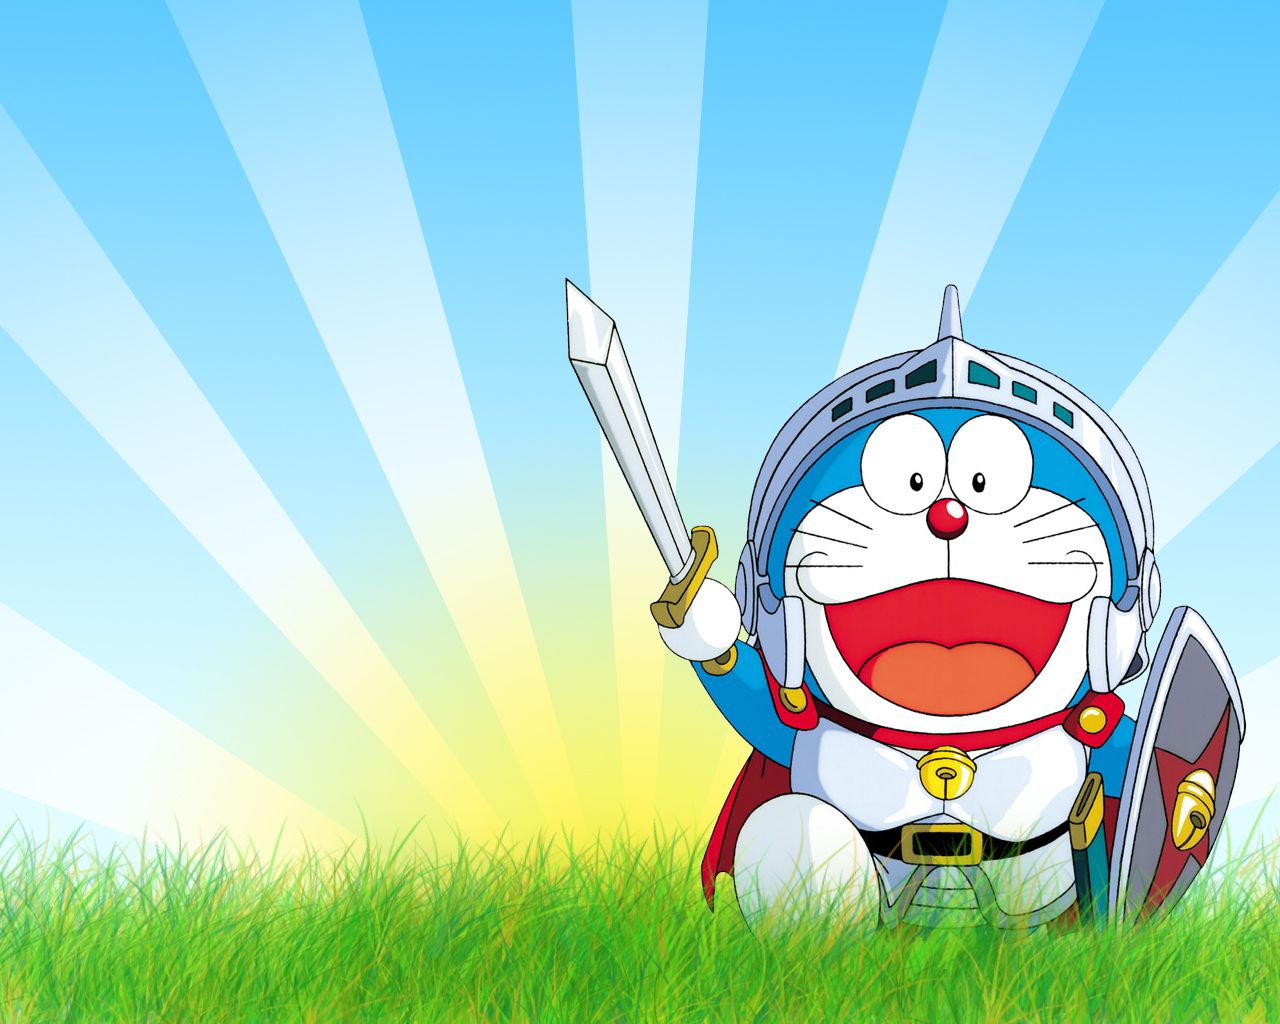 Hình nền Doraemon cho desktop, tải hình Doraemon miễn phí - tuyệt vời cho các fan của chú mèo máy đáng yêu! Với những hình nền Doraemon độc đáo và đầy sáng tạo, bạn sẽ không còn chán với giao diện desktop quen thuộc nữa. Tải ngay và trang trí desktop của bạn với những bộ ảnh Doraemon mới nhất và độc đáo nhất.